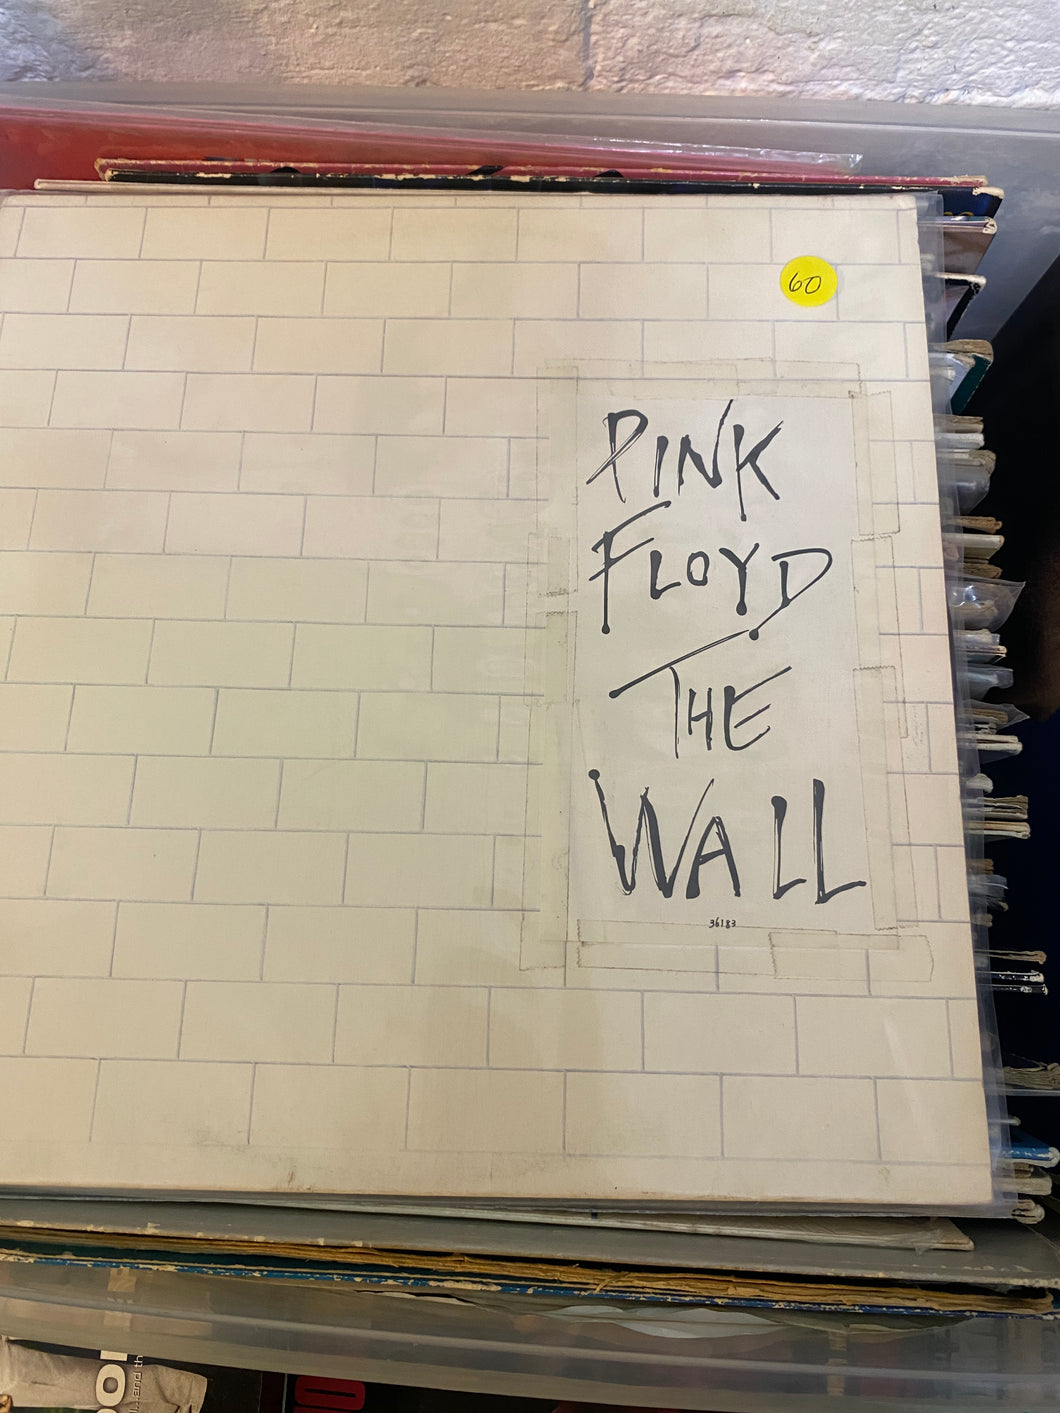 PINK FLOYD THE WALL (2 LP OG VERSION)